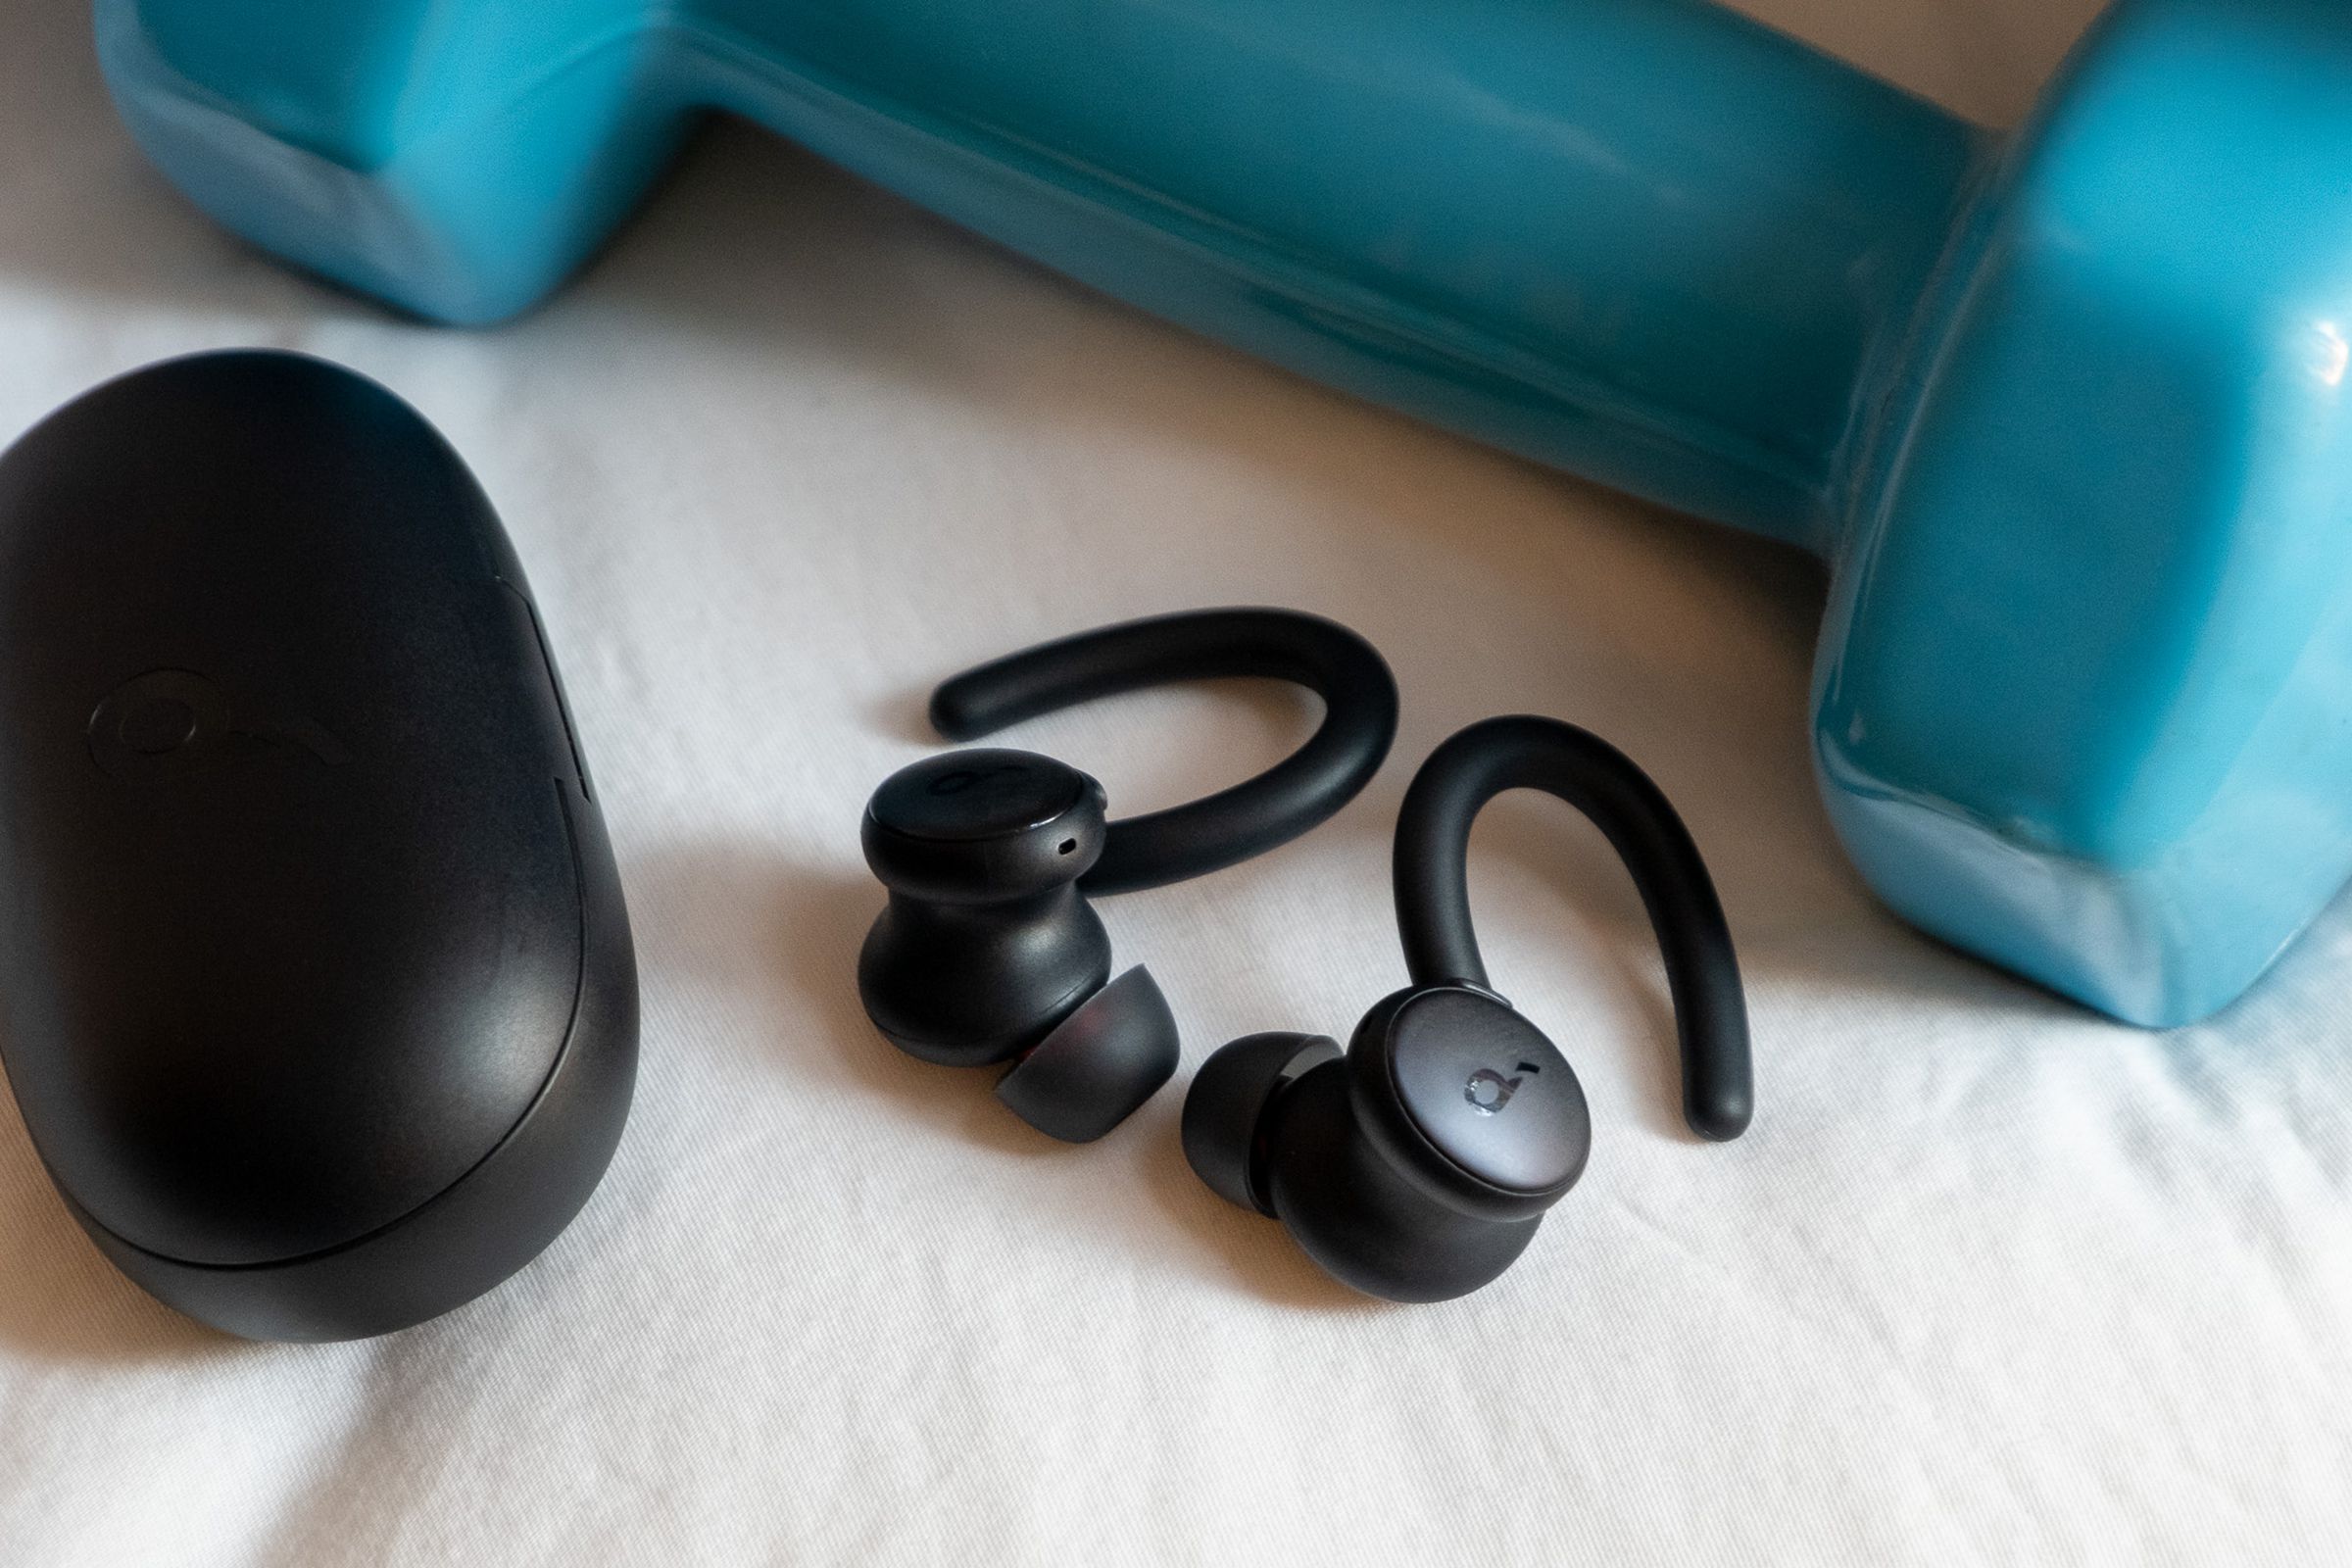 An image of Soundcoreâs Sport X10 earbuds next to a weight.